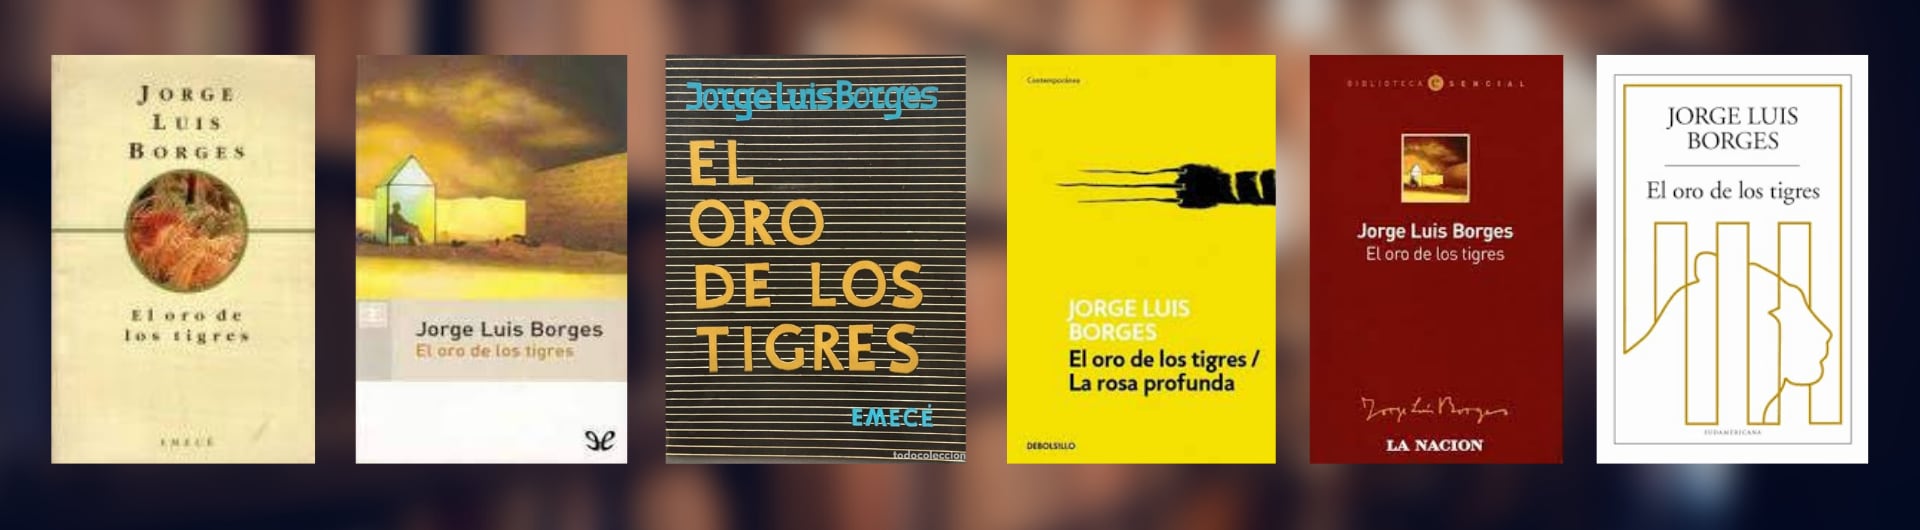 Distintas ediciones de “El oro de los tigres”, de Borges